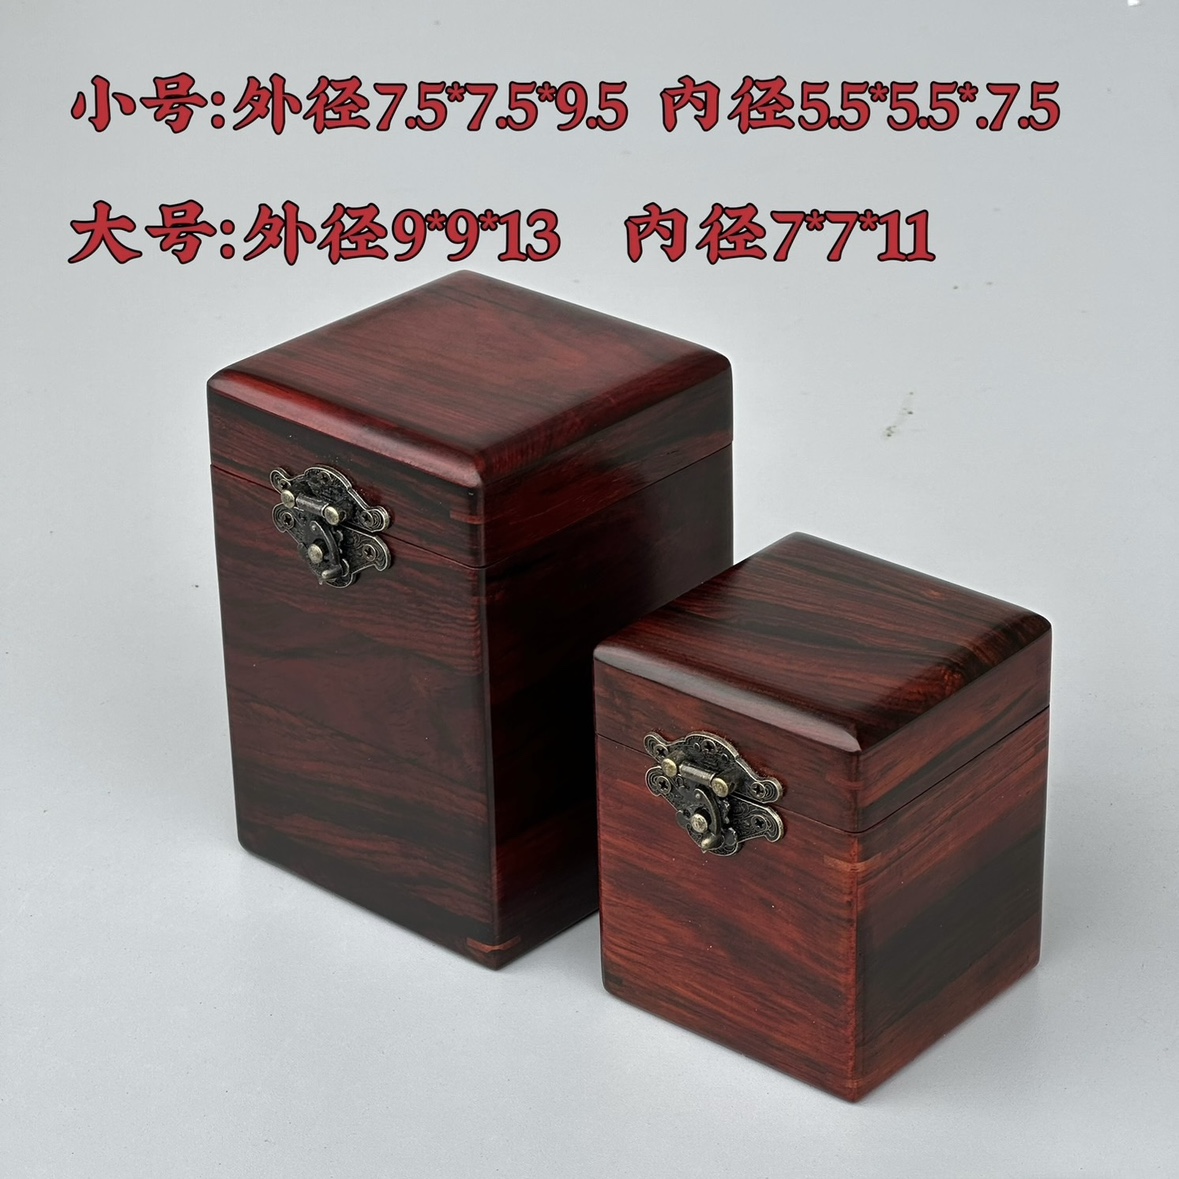 印章盒中式 收纳盒 红酸枝微凹黄檀印章盒木质盒子玉石手把件盒竖式